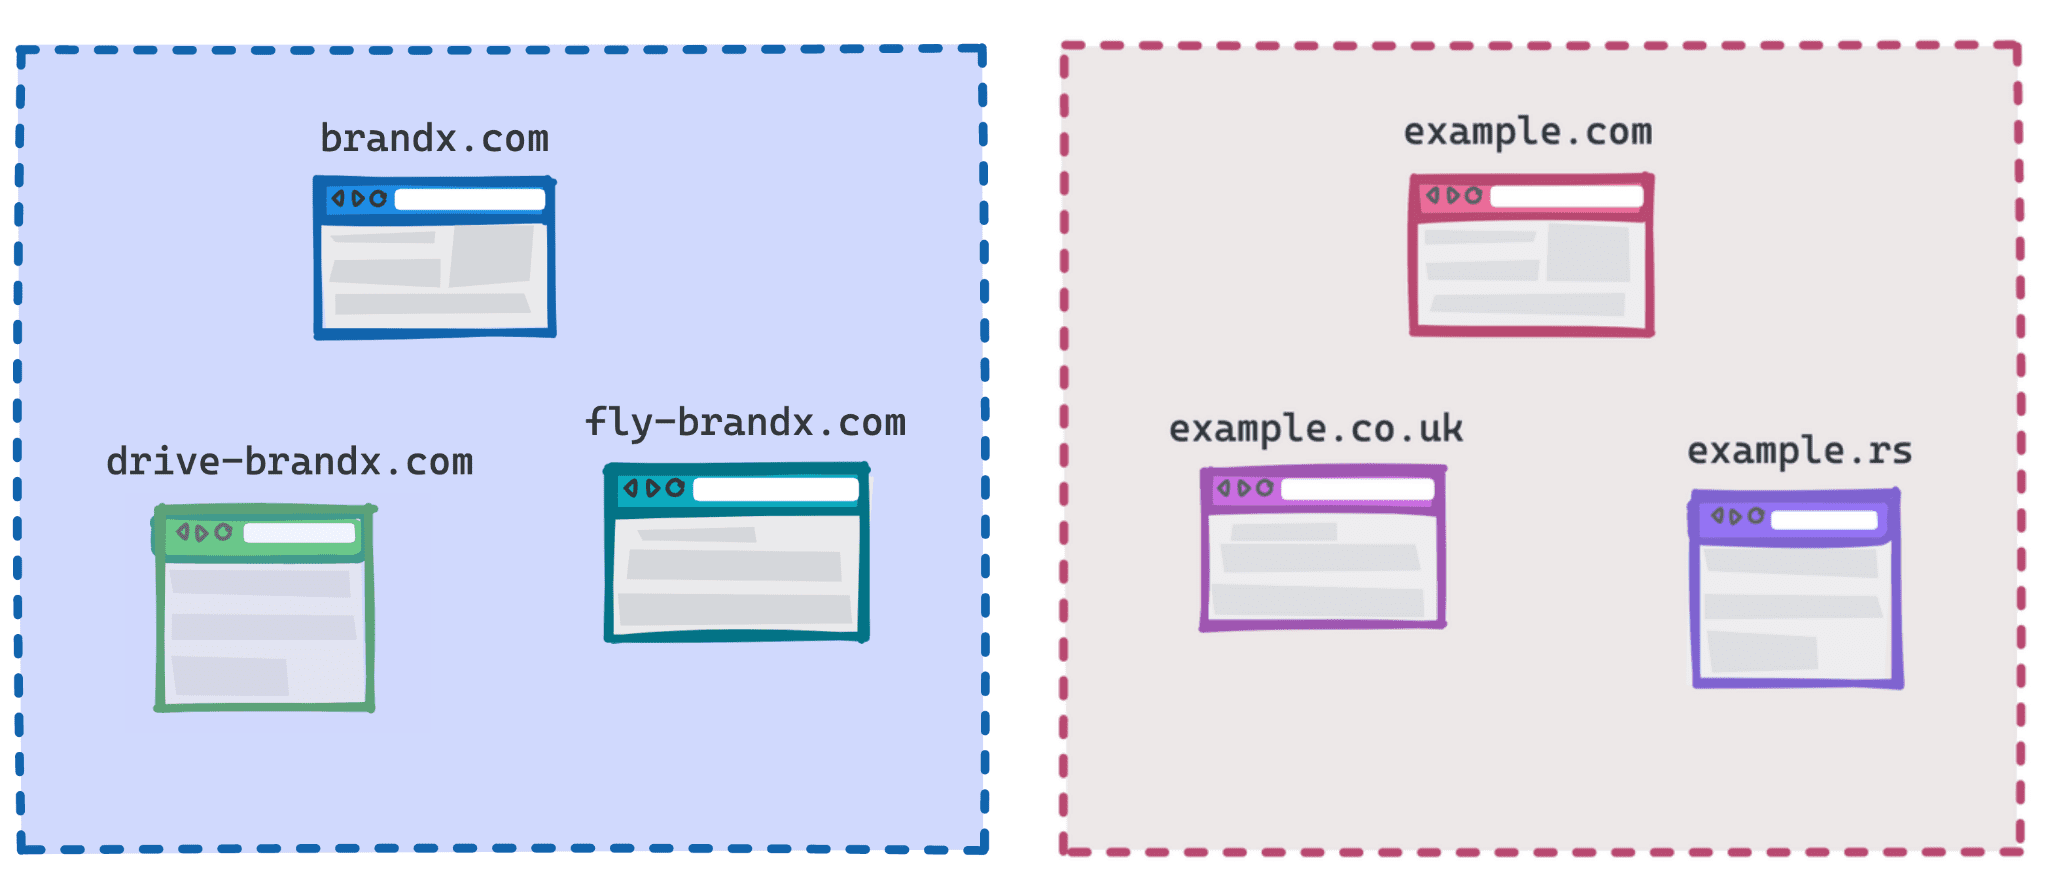 Sơ đồ cho thấy brandx.com, Flight-brandx.com và drive-brandx.com là một nhóm và example.com, example.rs, example.co.uk là một nhóm khác.